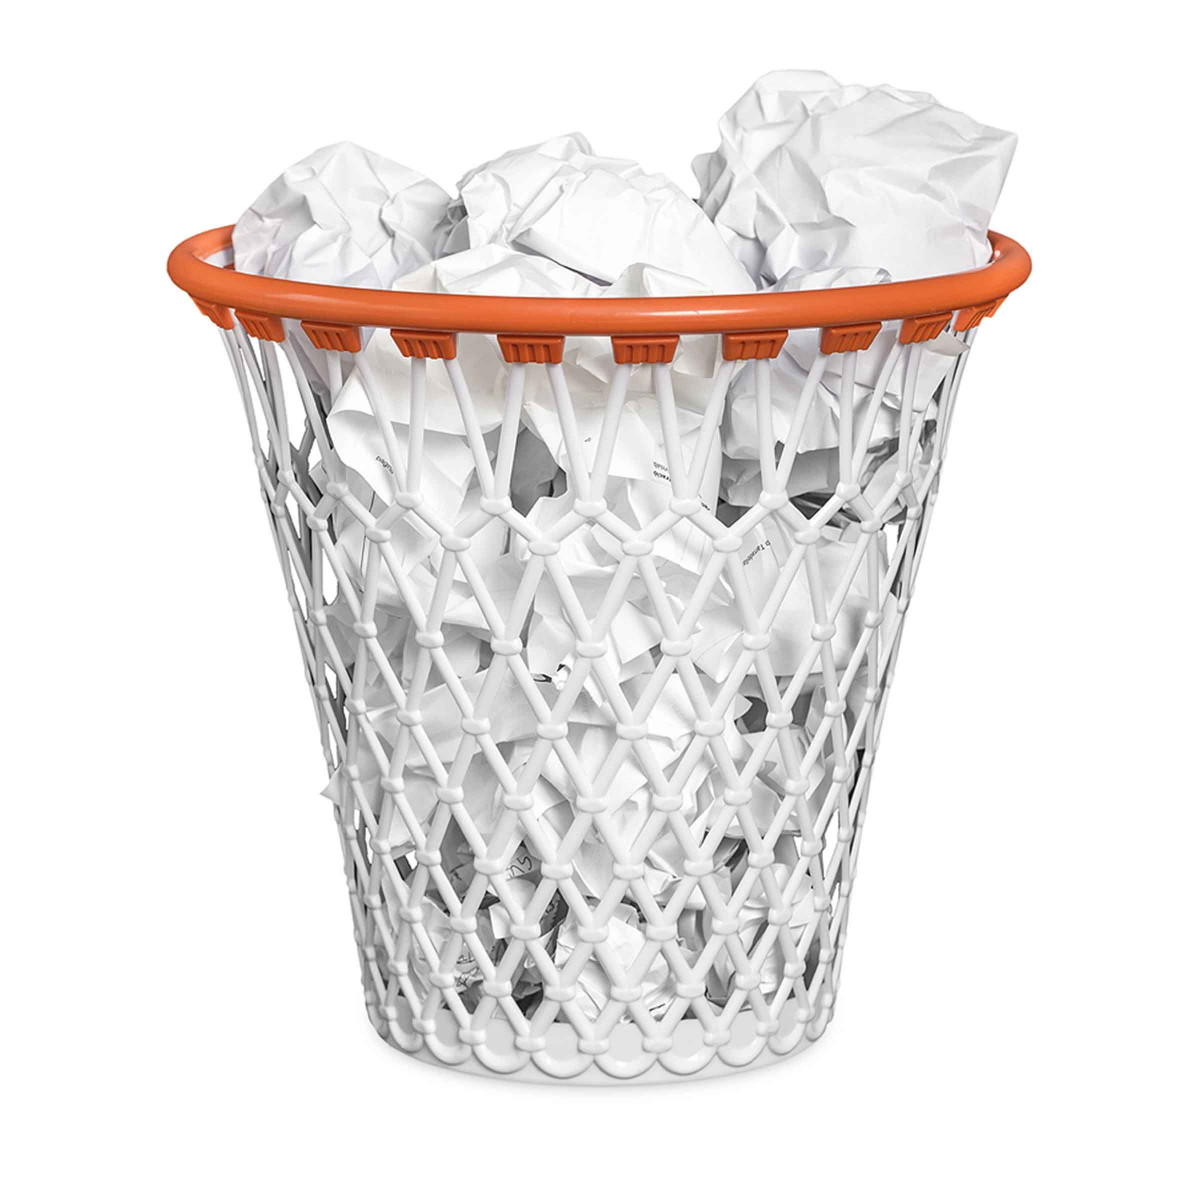 Panier de basket-ball peint poubelle basket-ball orange basket